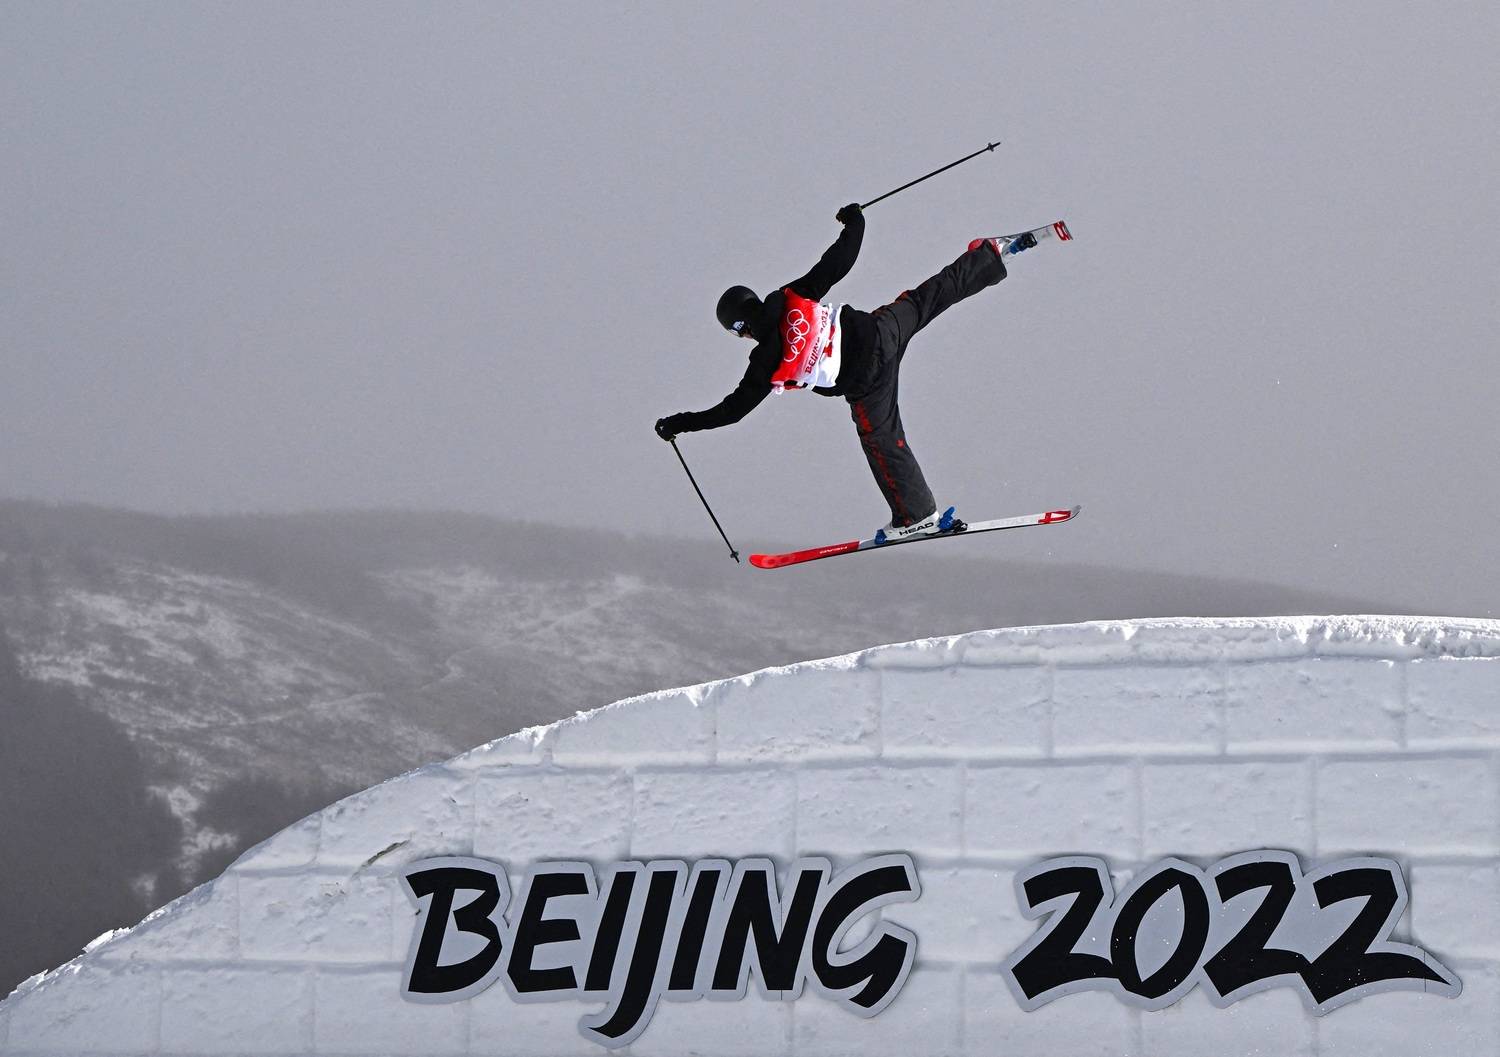 Bandeira Pequim 2022 No Céu. Jogo Olímpico De Inverno. Bem-vindo à China.  Ilustração Stock - Ilustração de jogo, esqui: 232760417